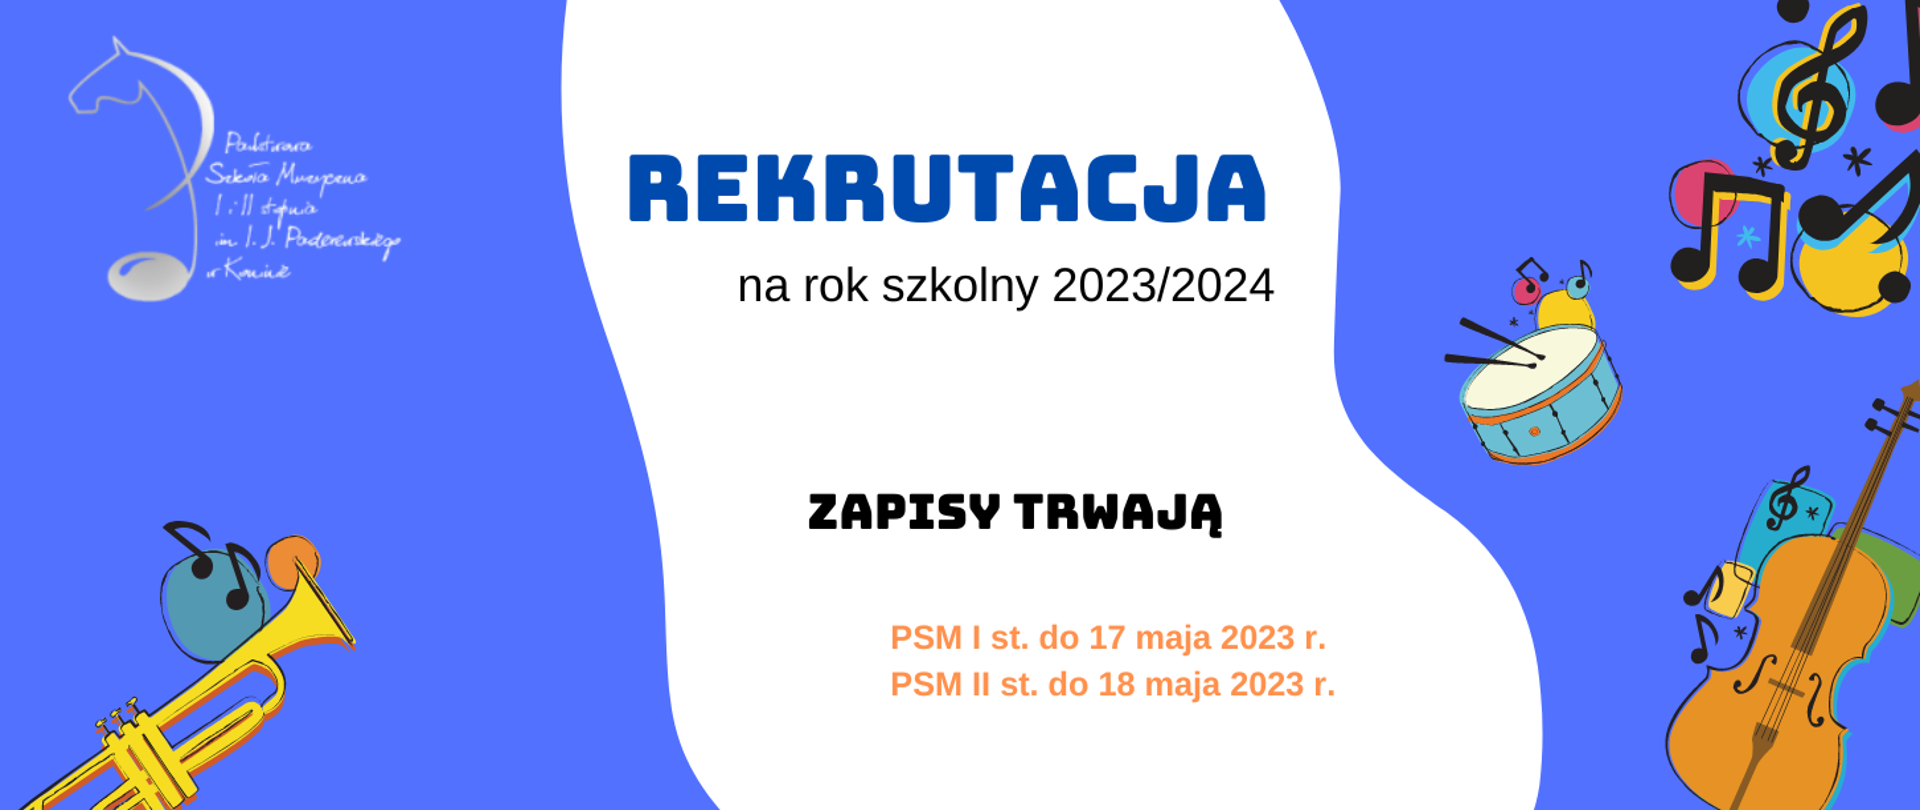 Plakat rekrutacji 2023/2024. Na niebieskim tle kolorowe instrumenty, pośrodku biały pas z informacjami zapisy trwają PSM I st do 17 maja 2023 PSM II st. do 18 maja 2023 r.